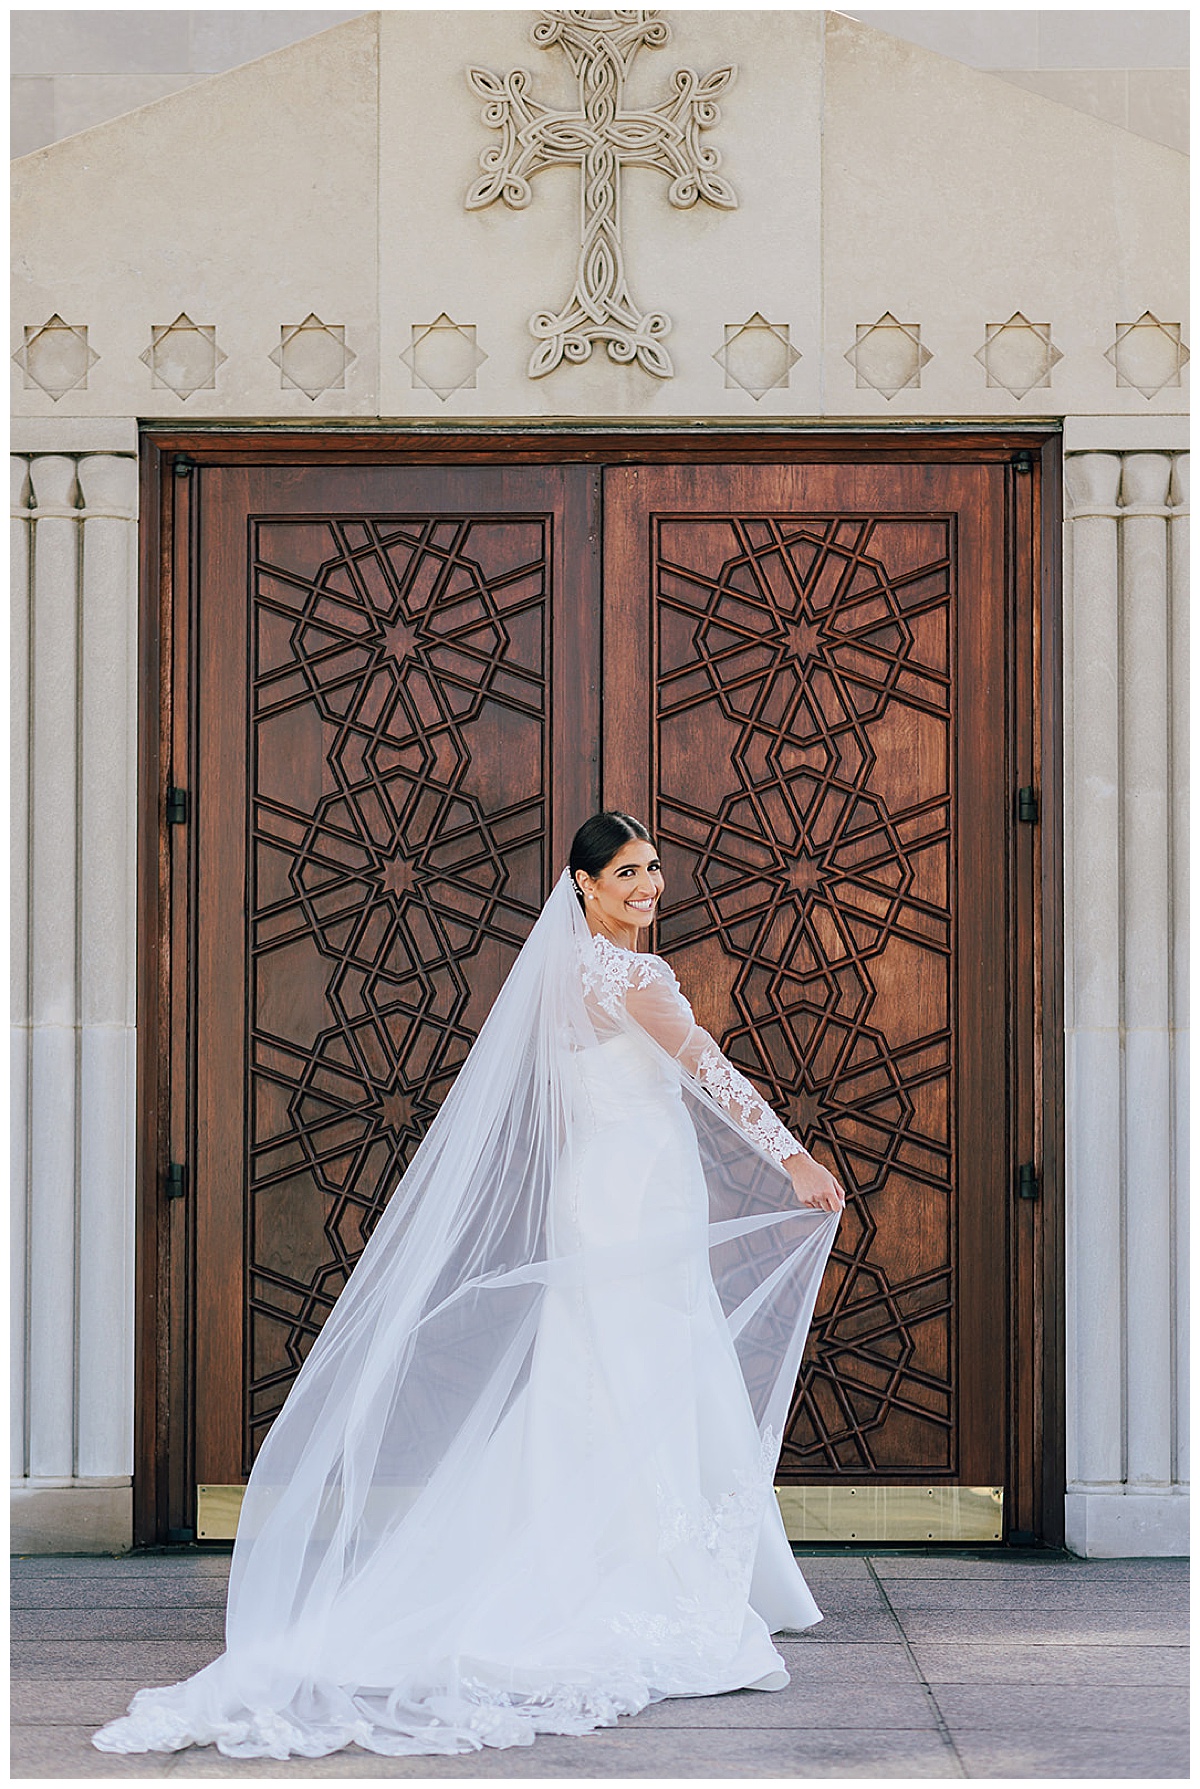 Bride spins her veil for Epic Regency Manor